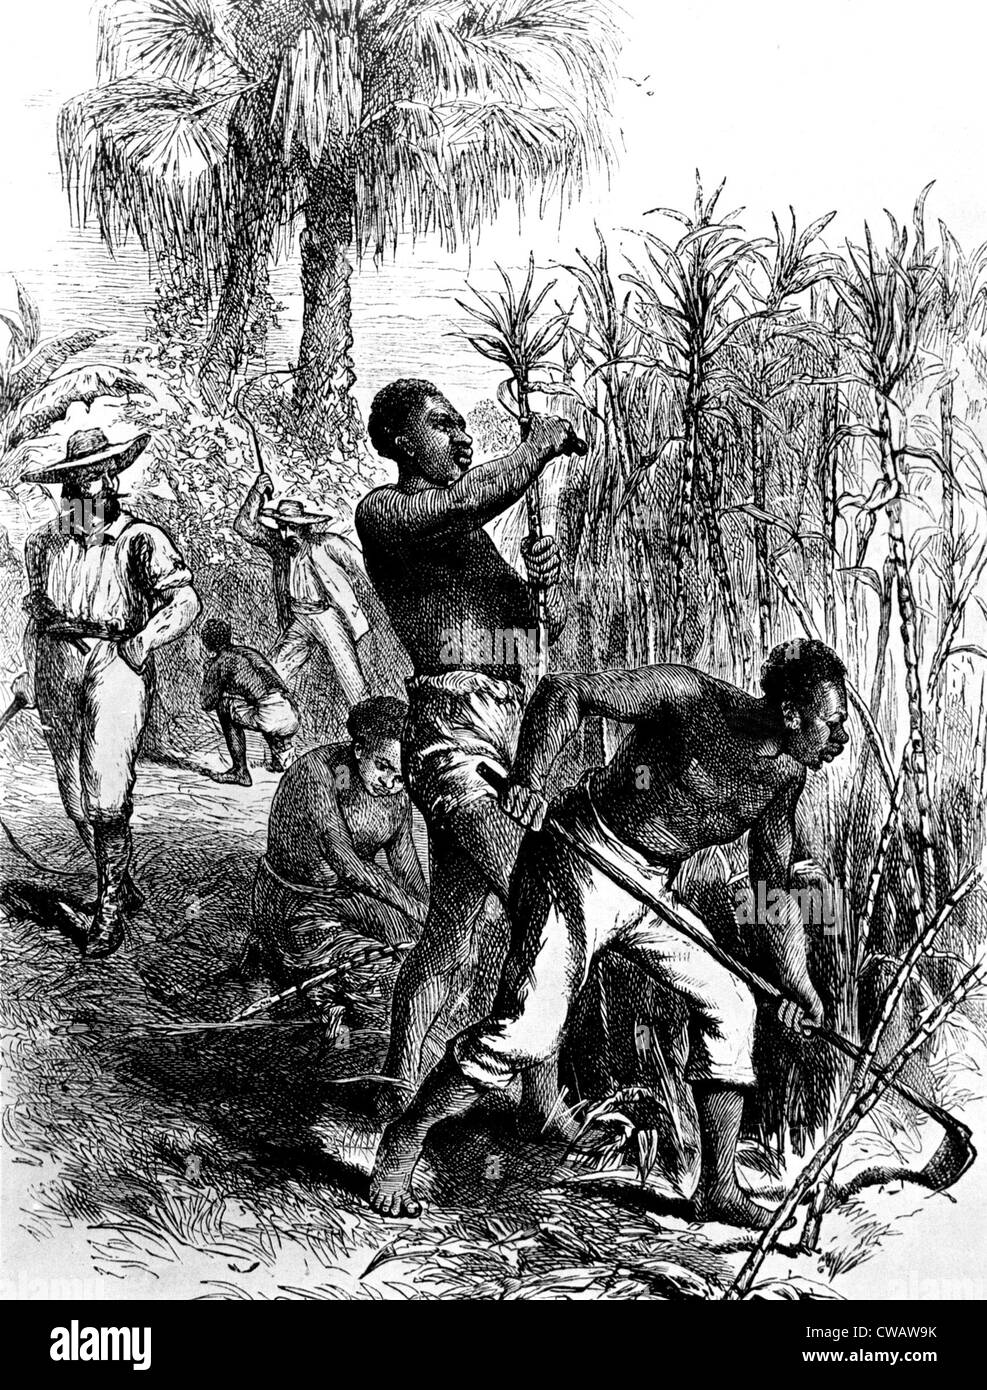 Los esclavos la cosecha de la caña de azúcar. Cortesía: CSU Archives / Everett Collection Foto de stock